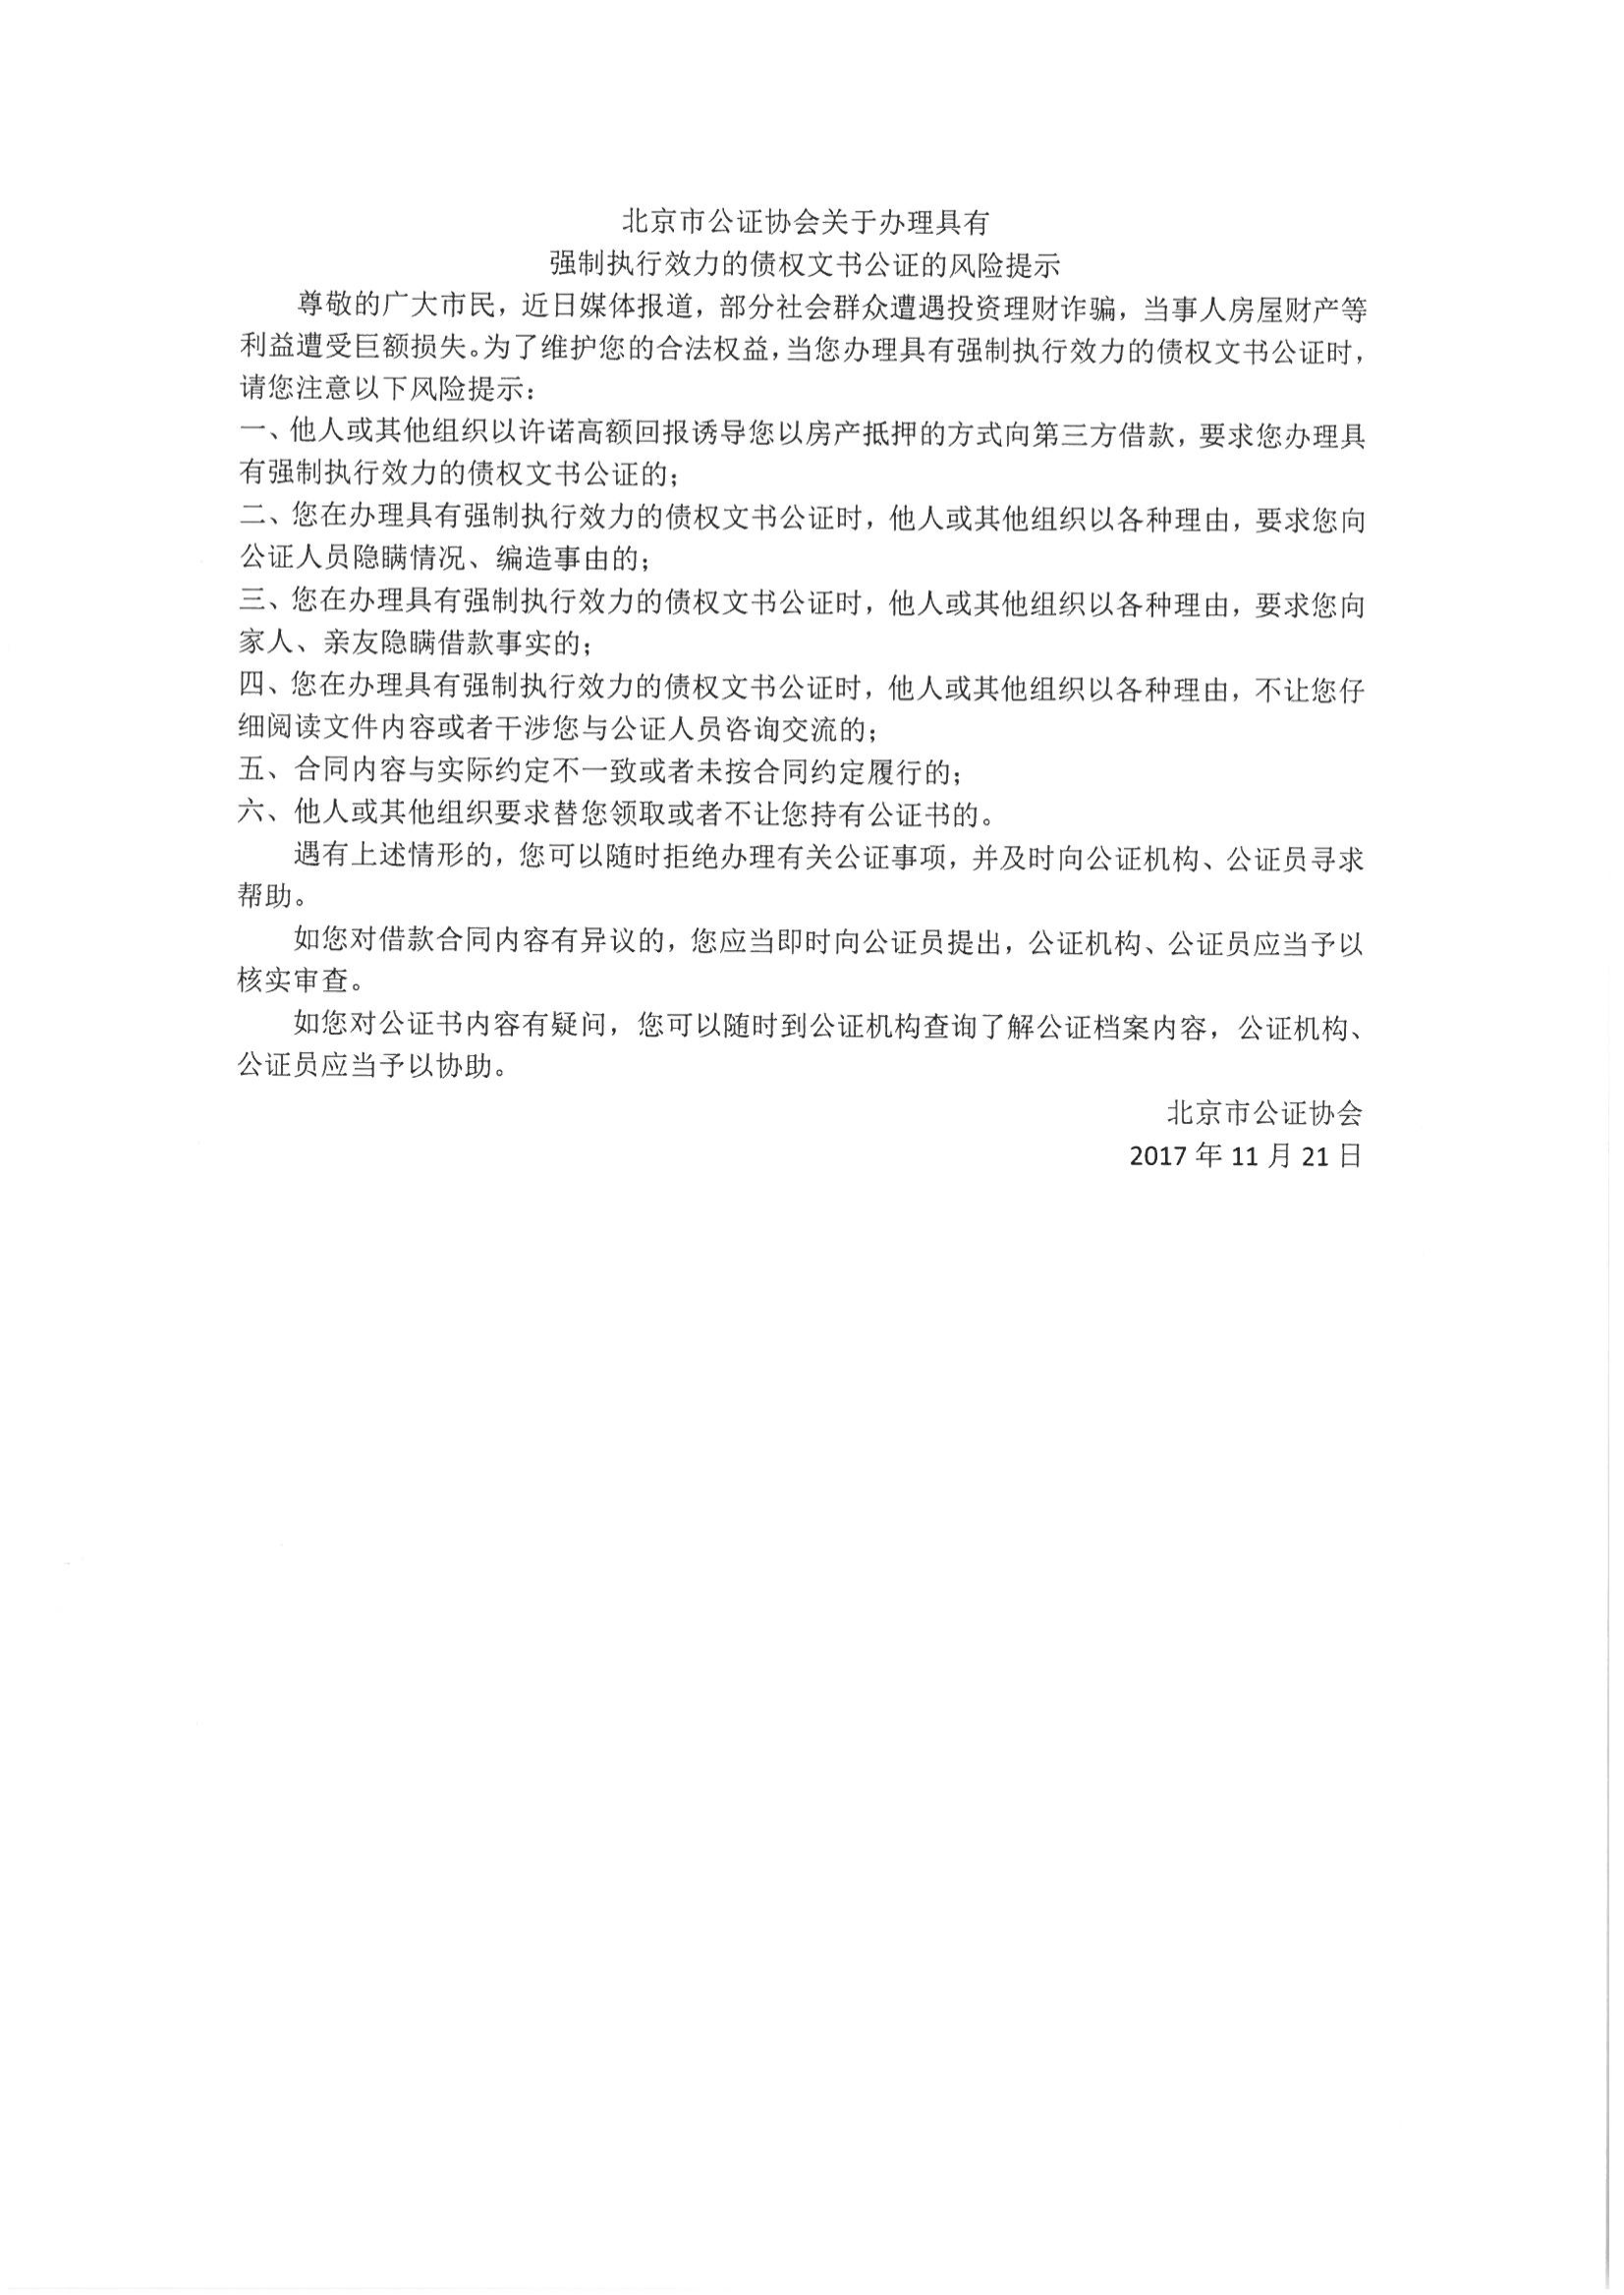 1、北京市公证协会关于办理具有强制执行效力的债权文书公证的风险提示_00